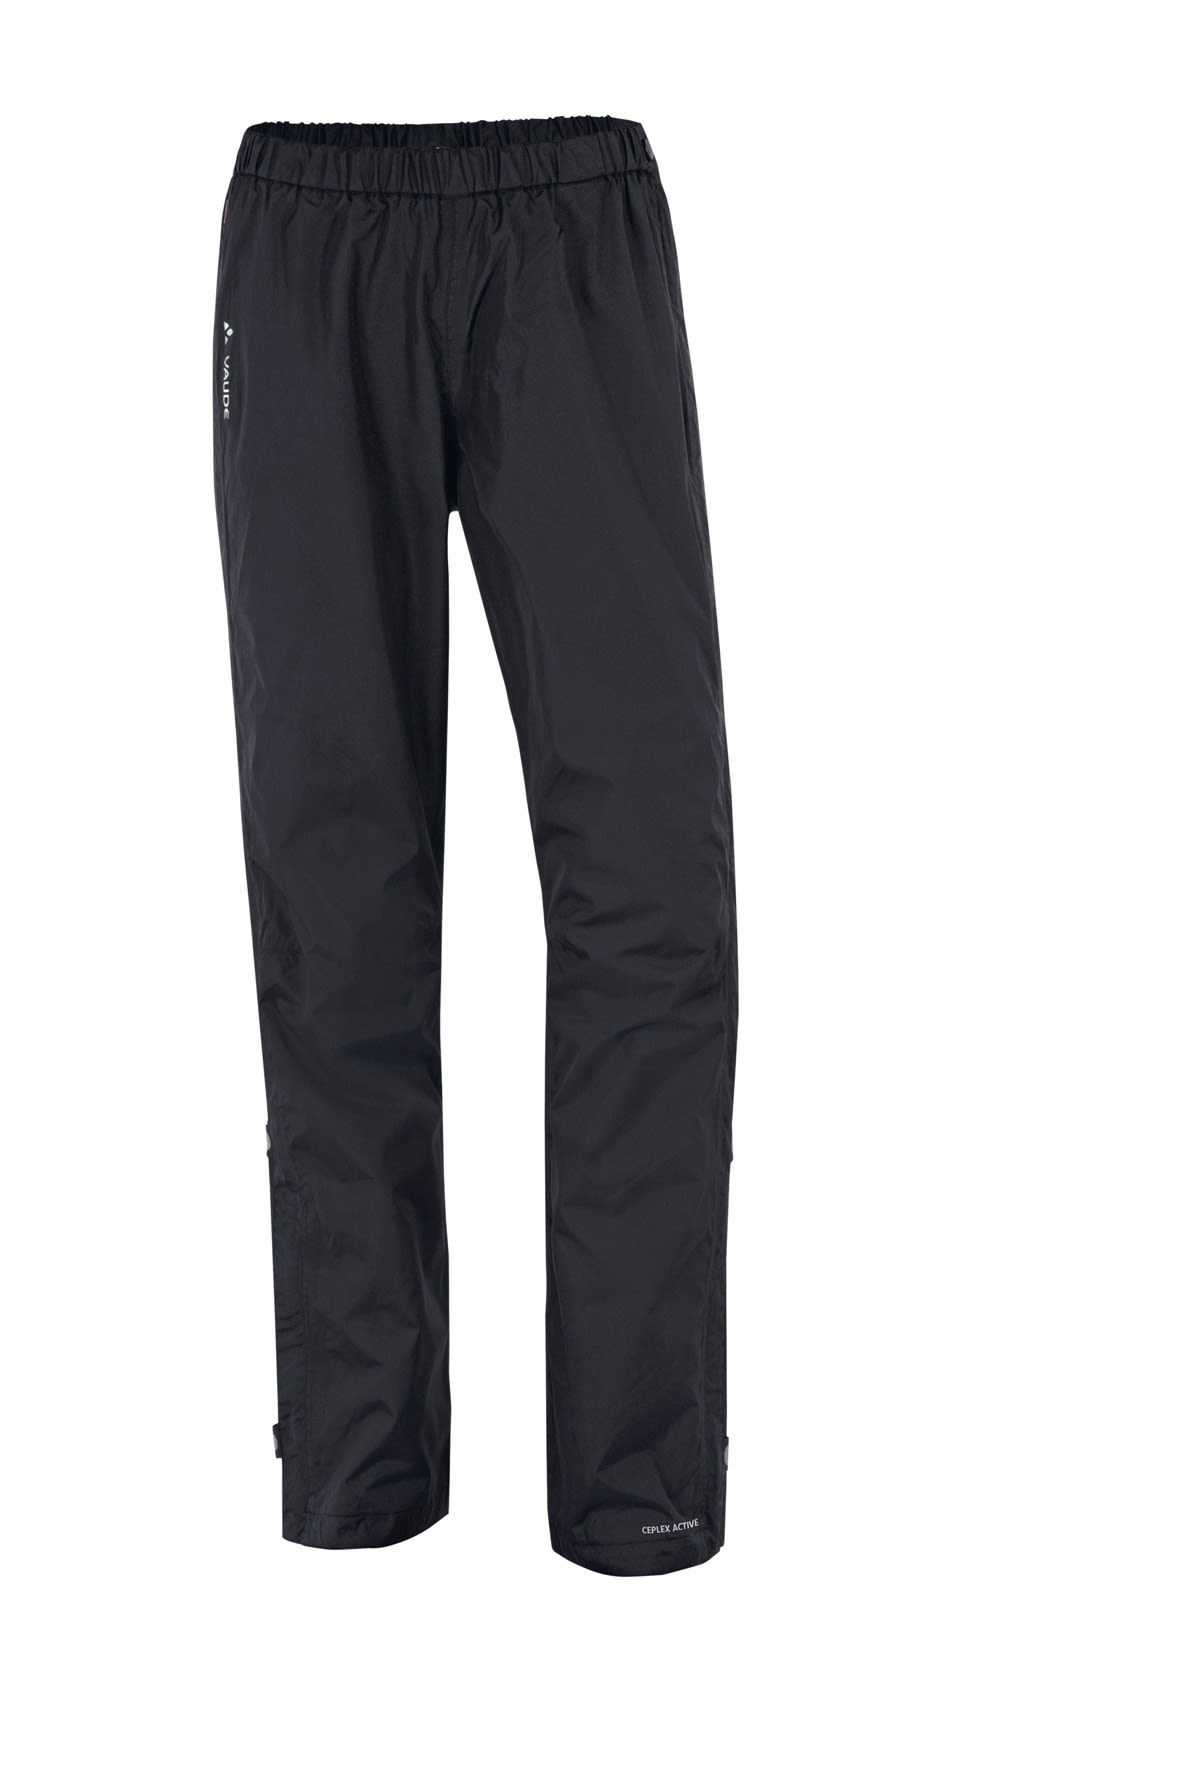 Vaude Fluid Full-Zip Pants Schwarz- Female Hosen- Grsse 42 - Short - Farbe Black